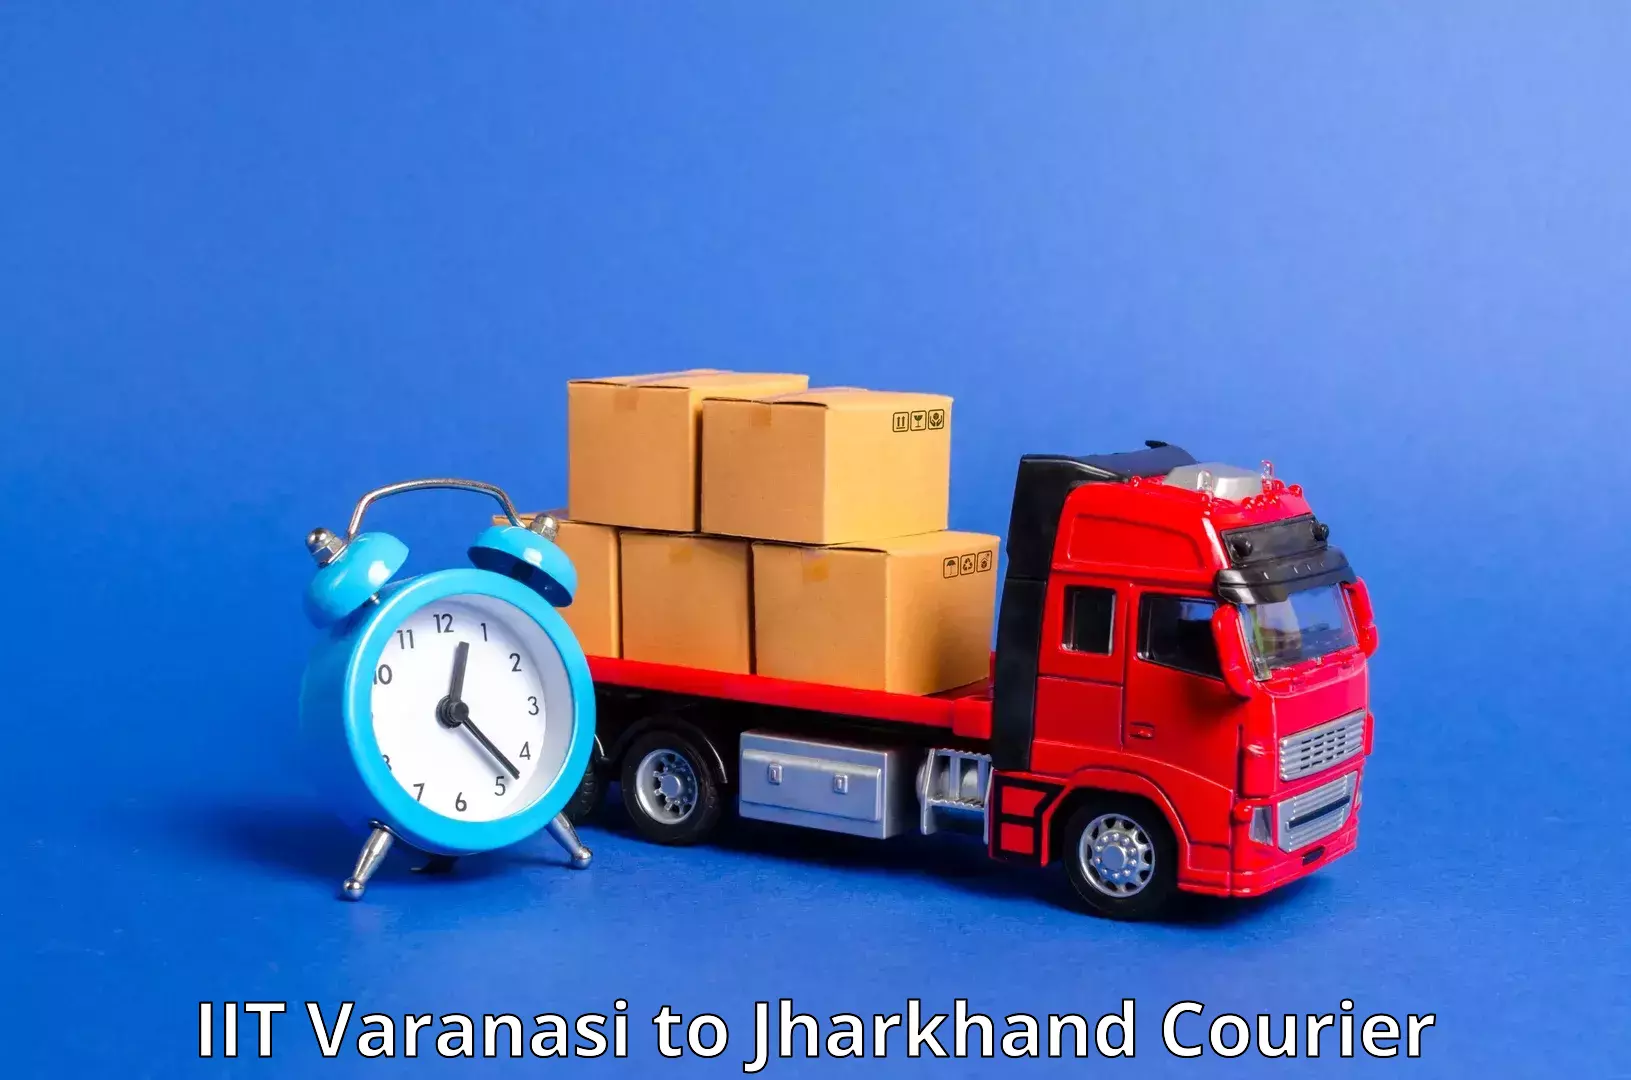 Holiday shipping services IIT Varanasi to Chaibasa